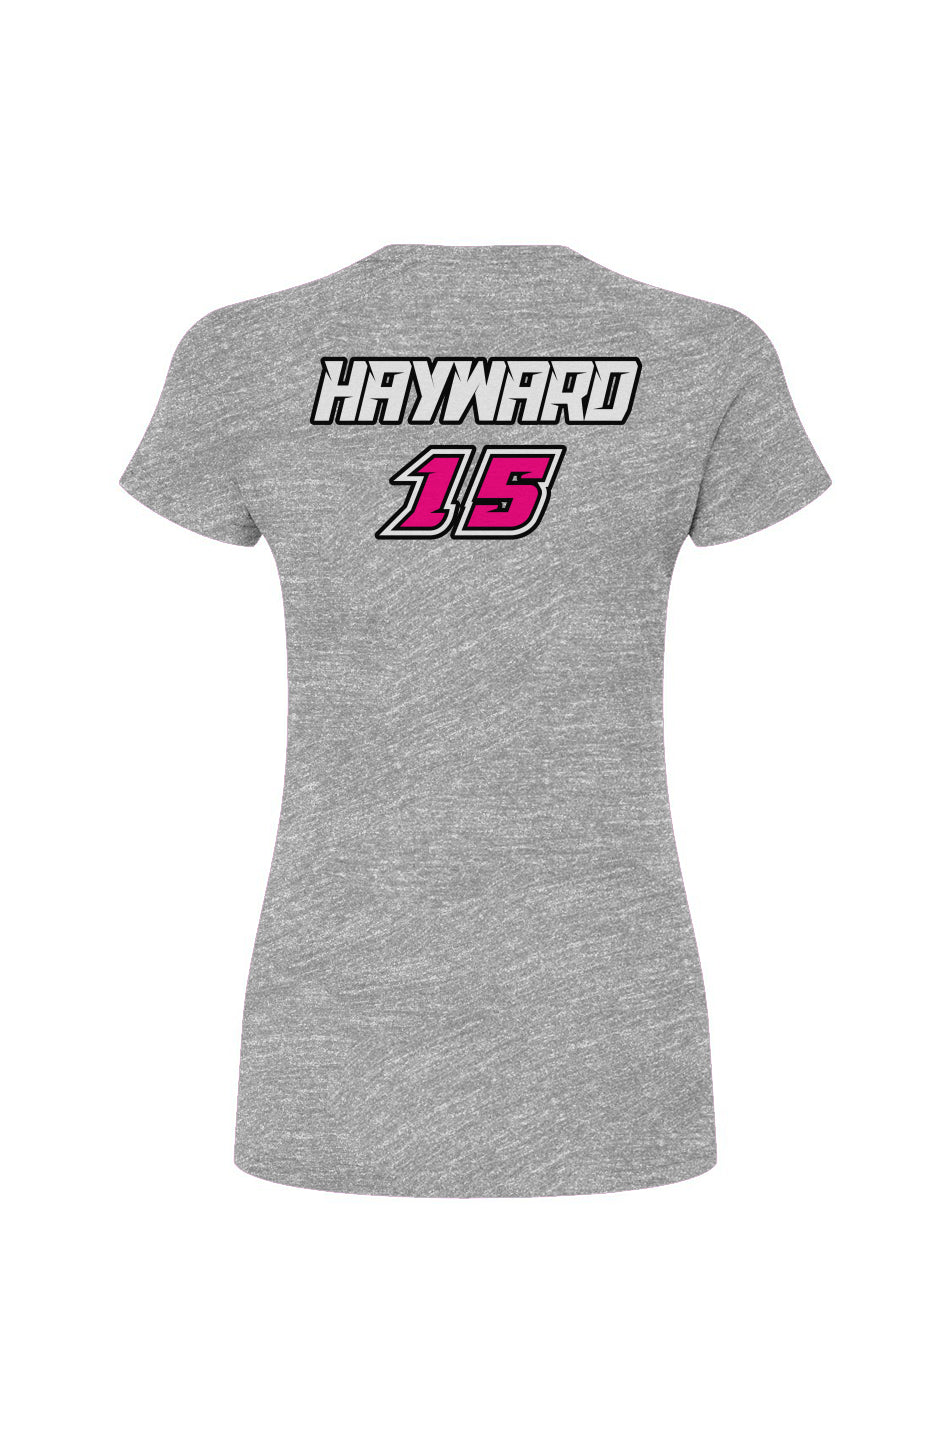 Women's T-Shirt | Kendra Hayward